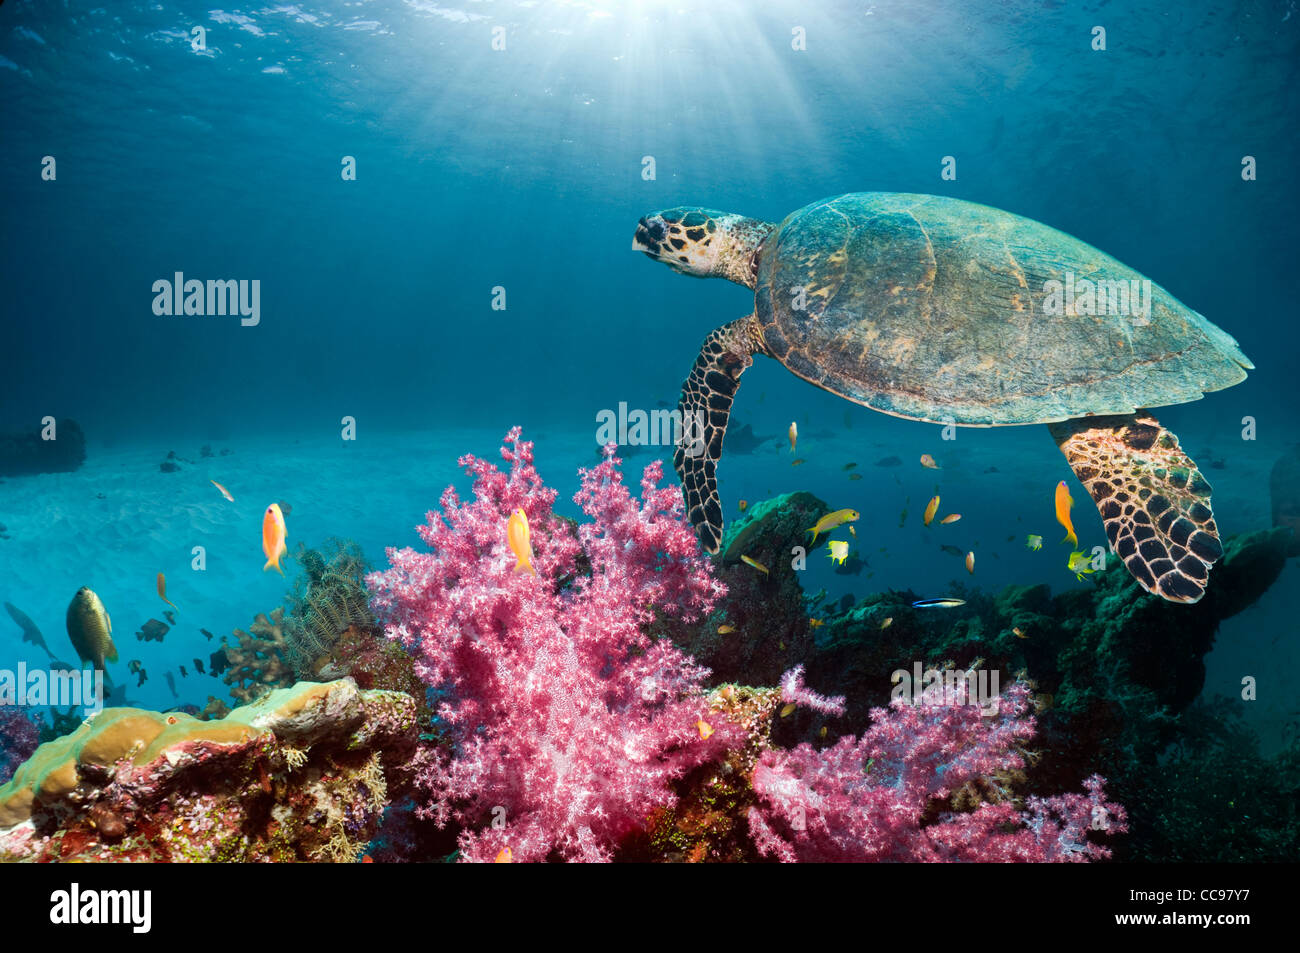 La tortuga carey (Eretmochelys imbricata) nadando en el arrecife de corales blandos. Mar de Andamán, Tailandia. Foto de stock